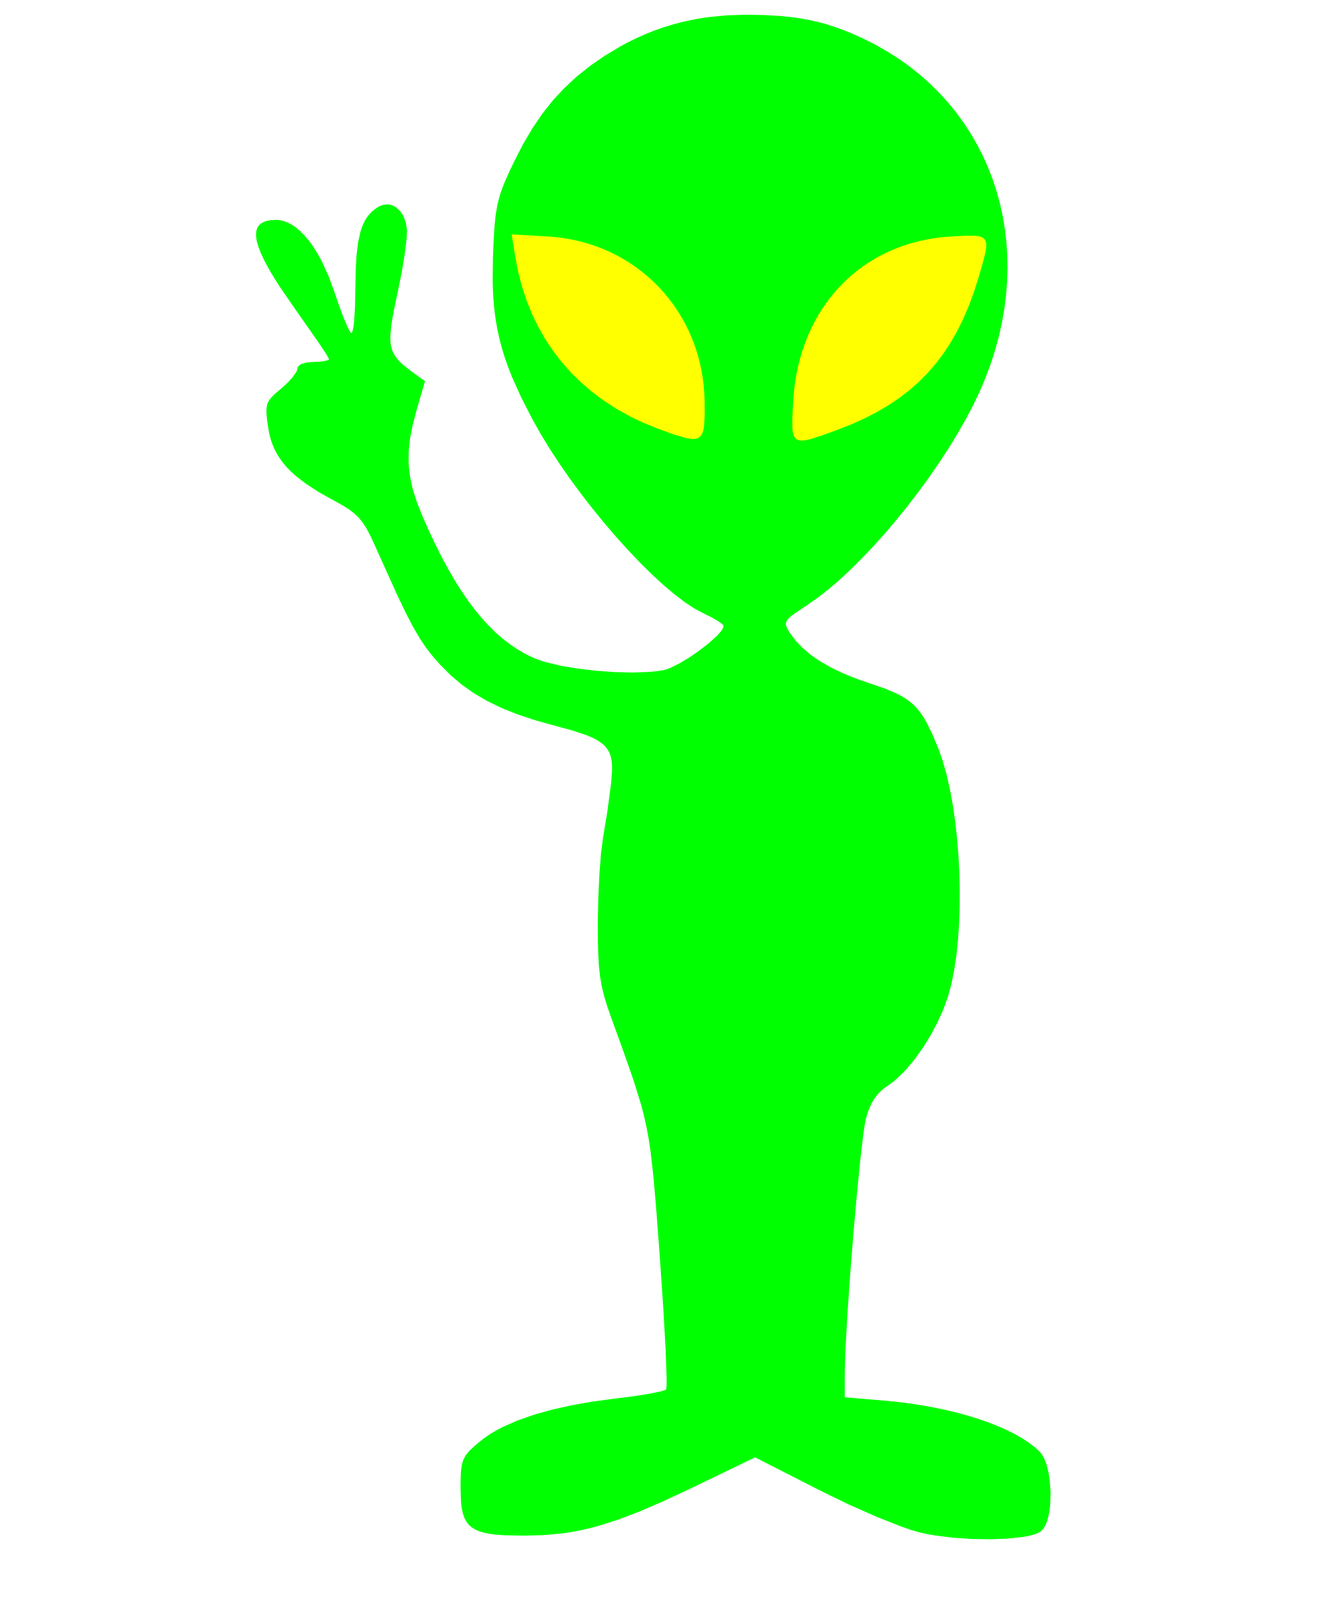 Spaceship green alien